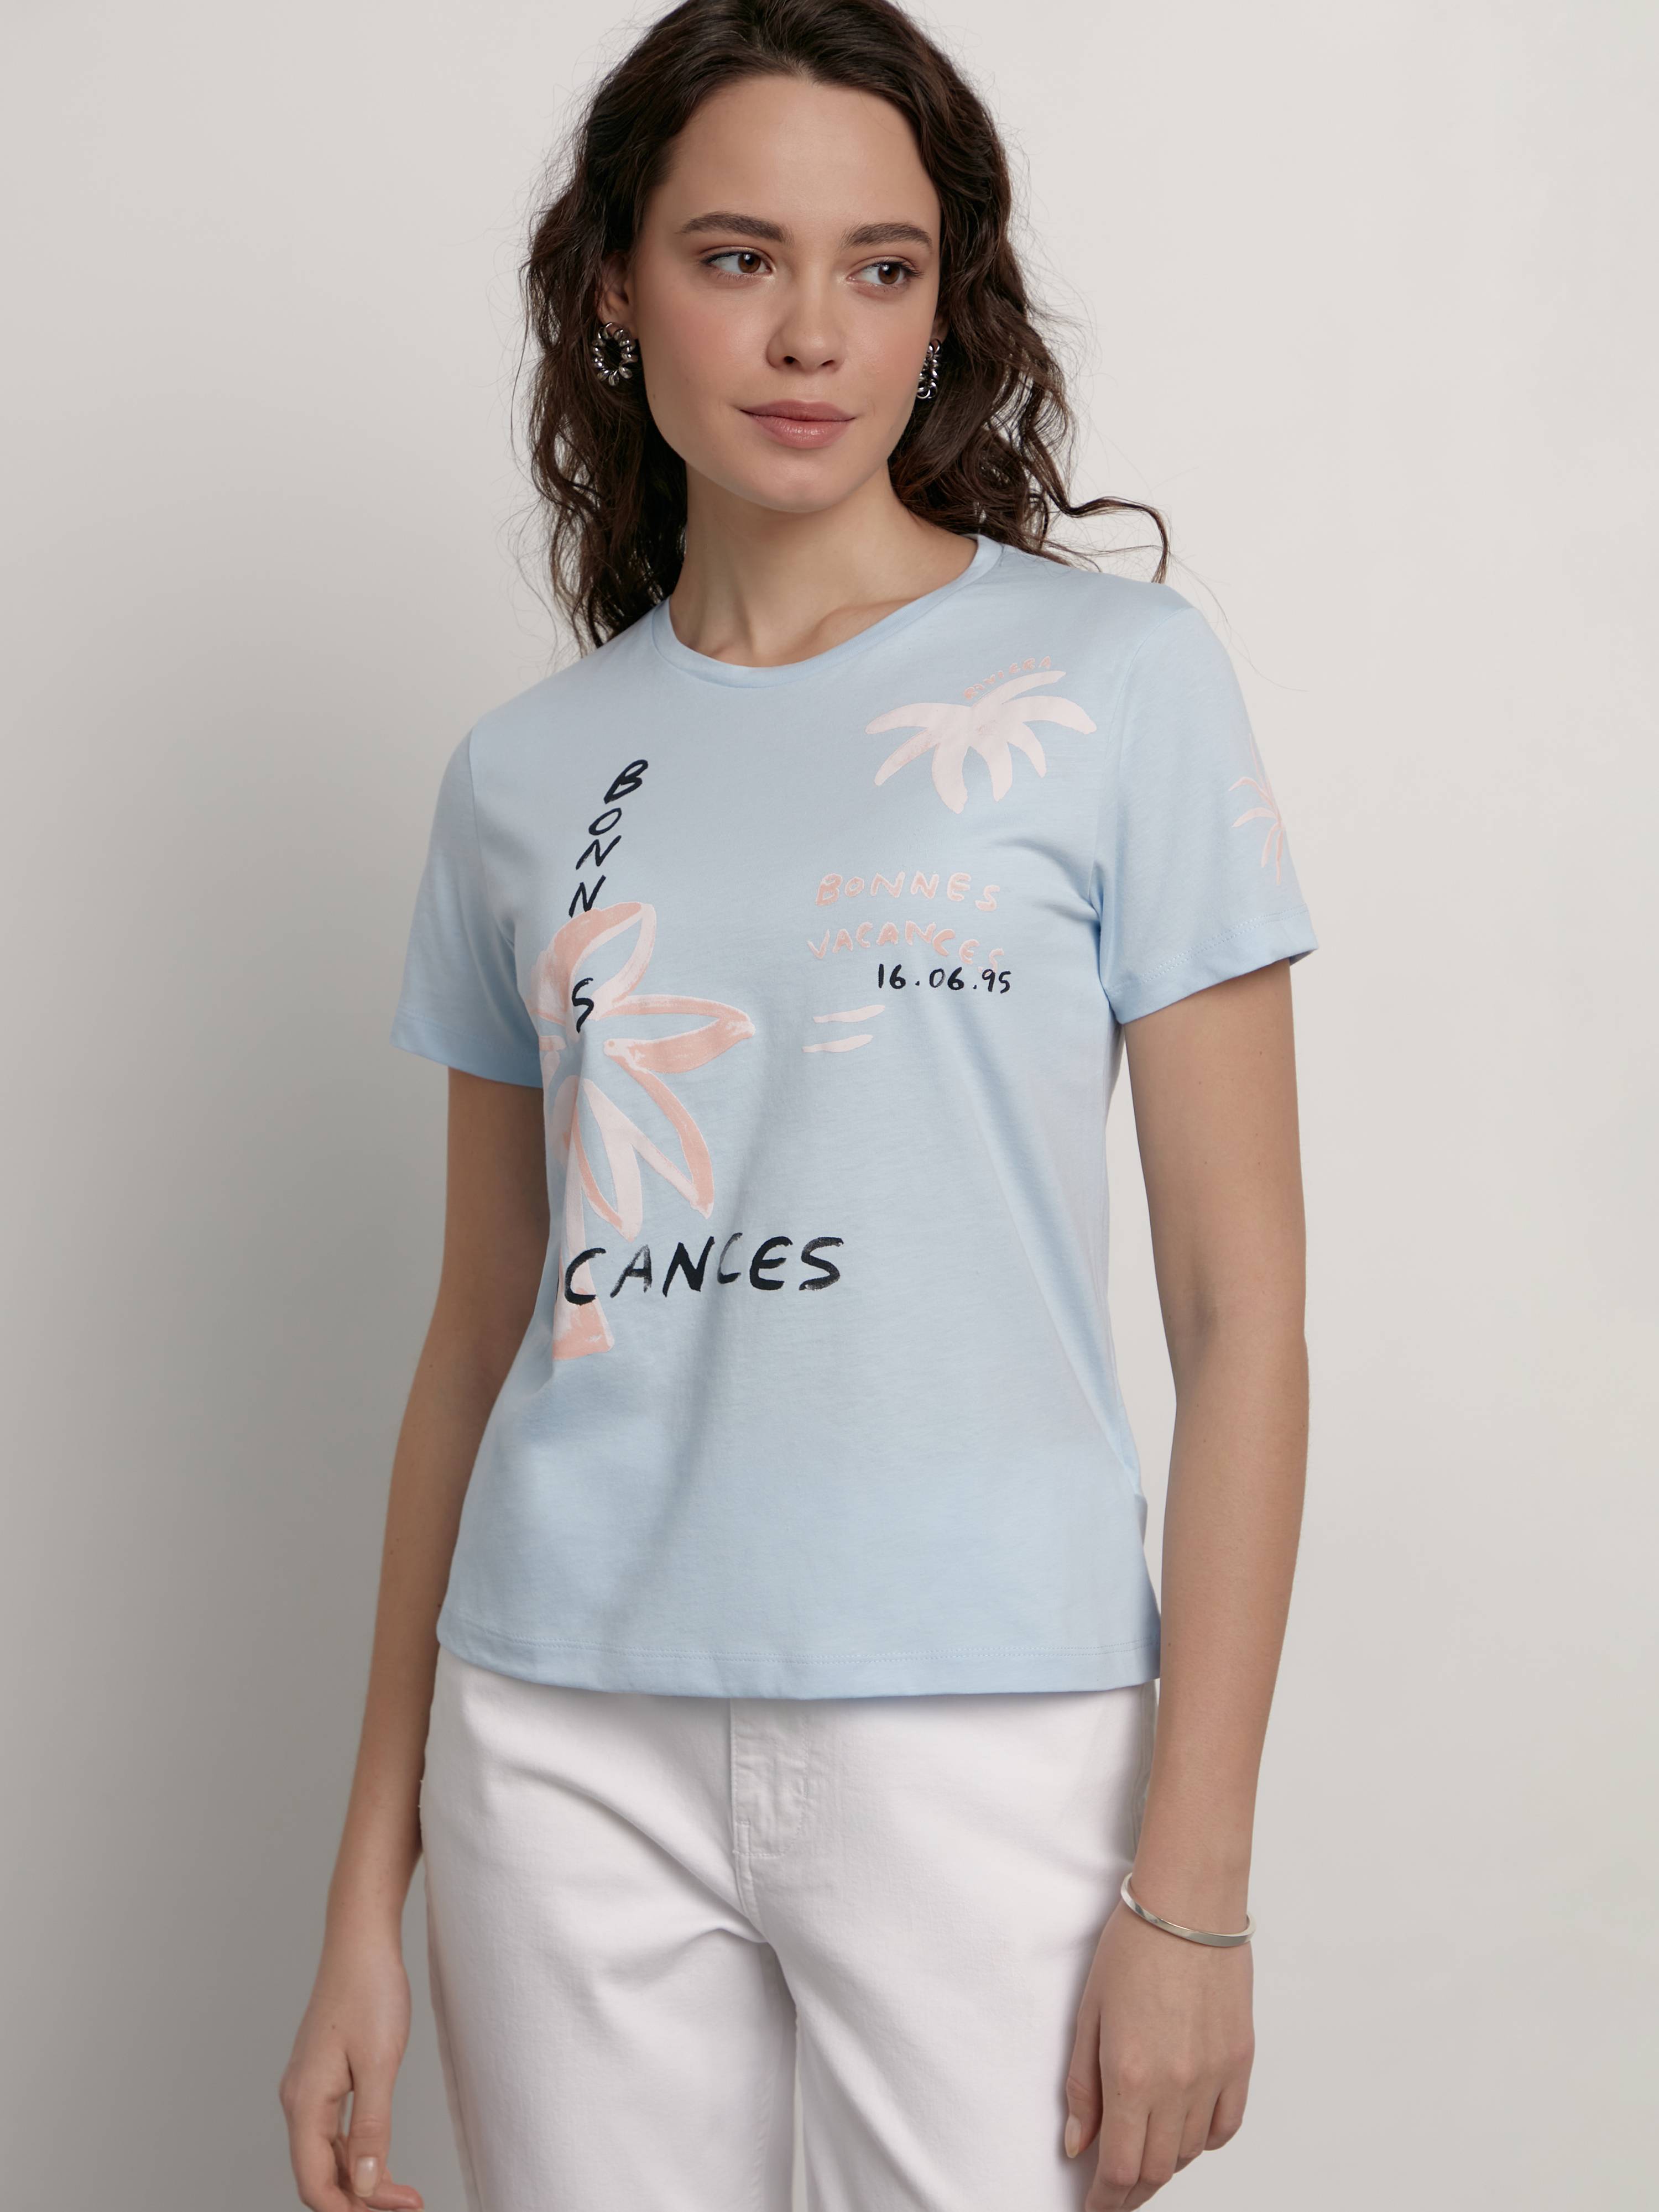 Базовая футболка из хлопка с рисунком «Vacances» LD 2124 Conte ⭐️, цвет sky blue, размер 170-100/xl